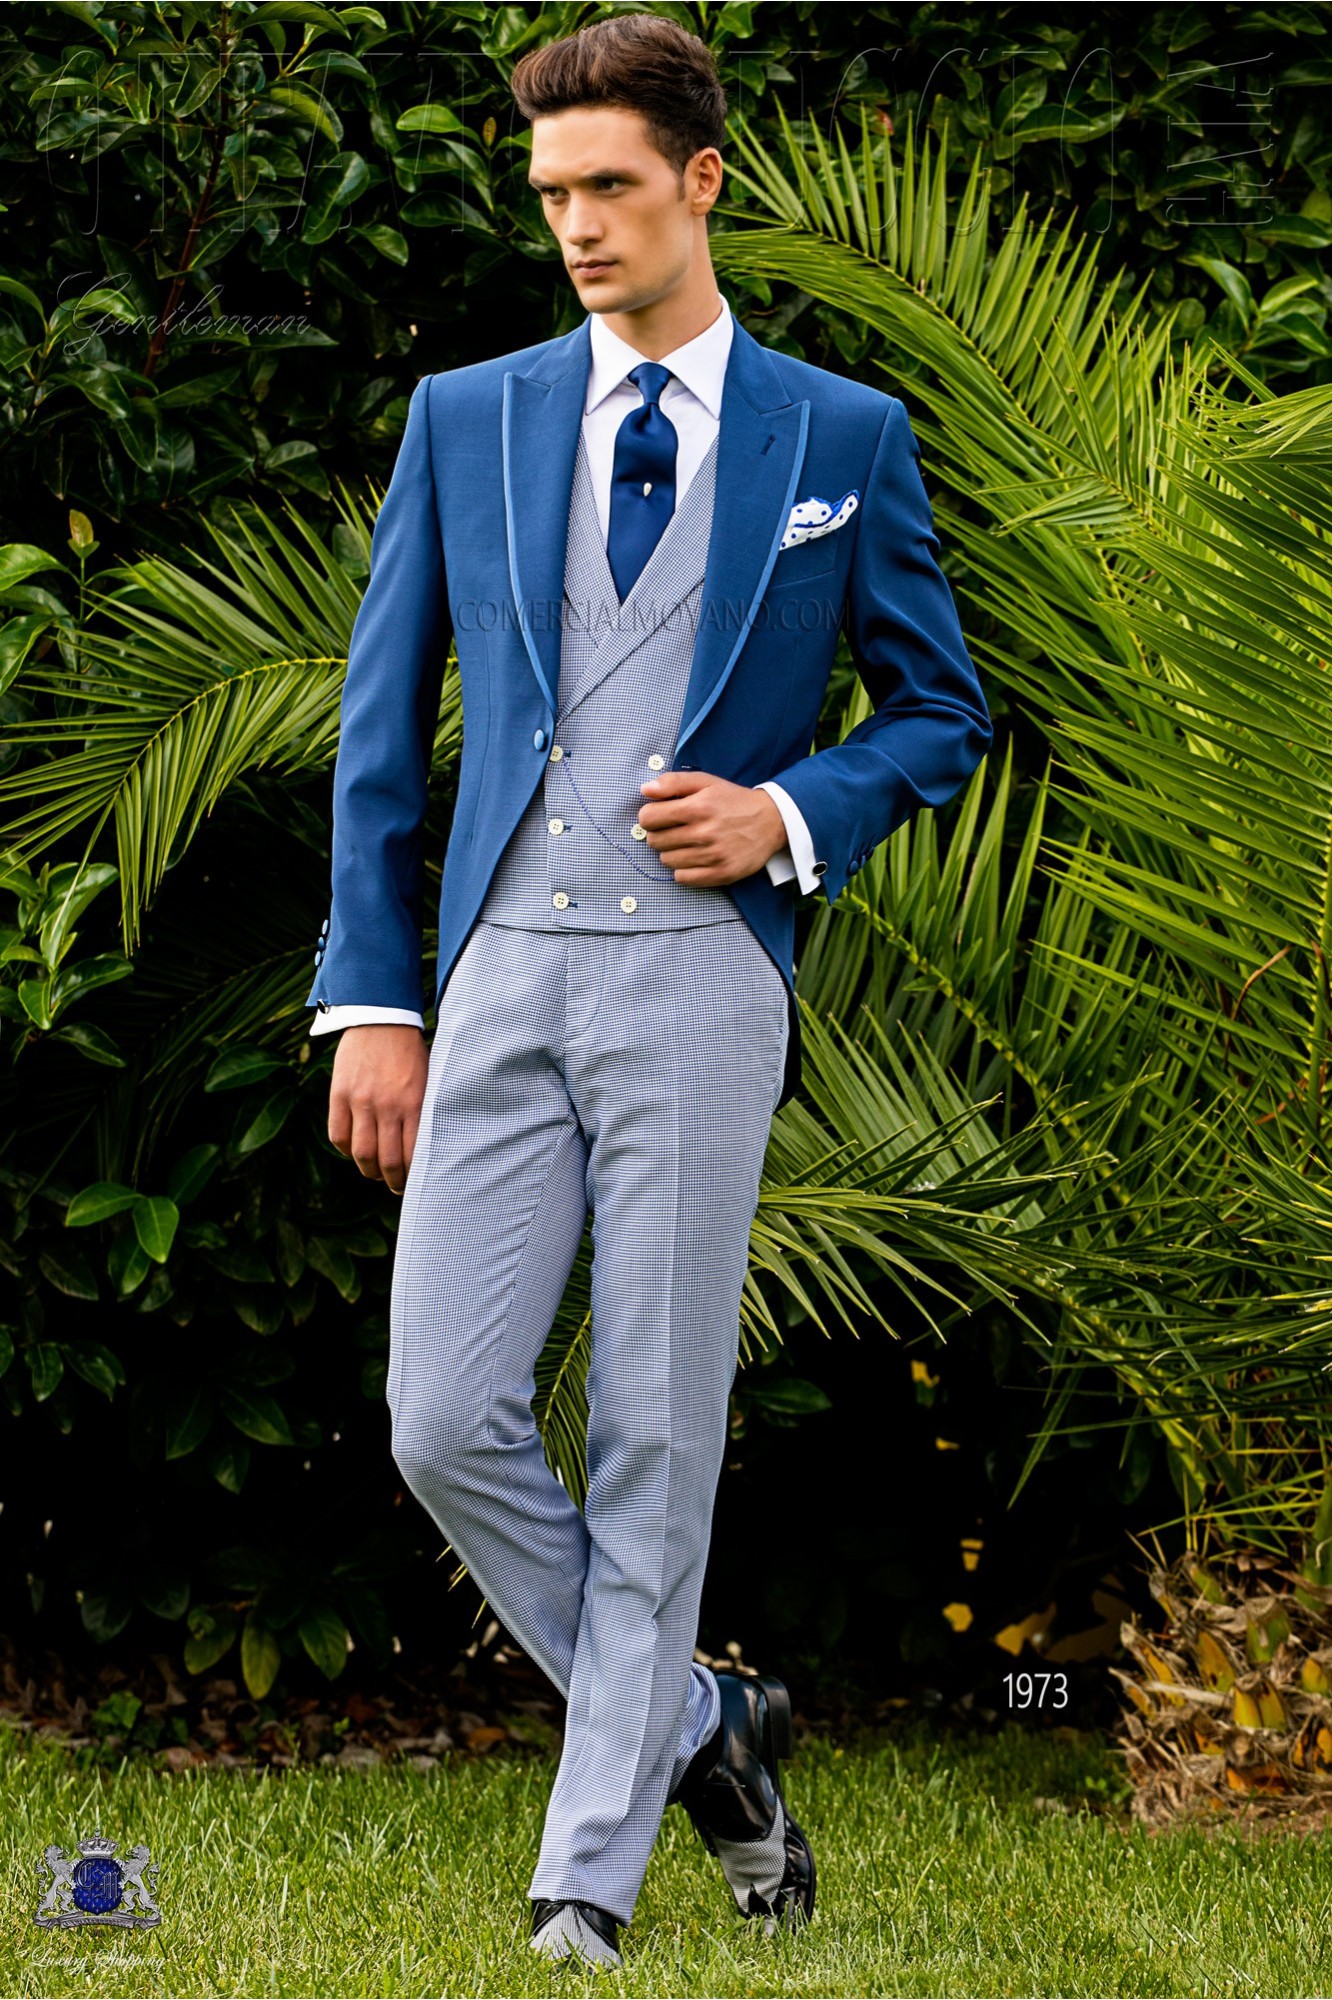 Traje de novio azul royal con pantalón pata de gallo azul modelo: 1973 Mario Moyano colección Gentleman